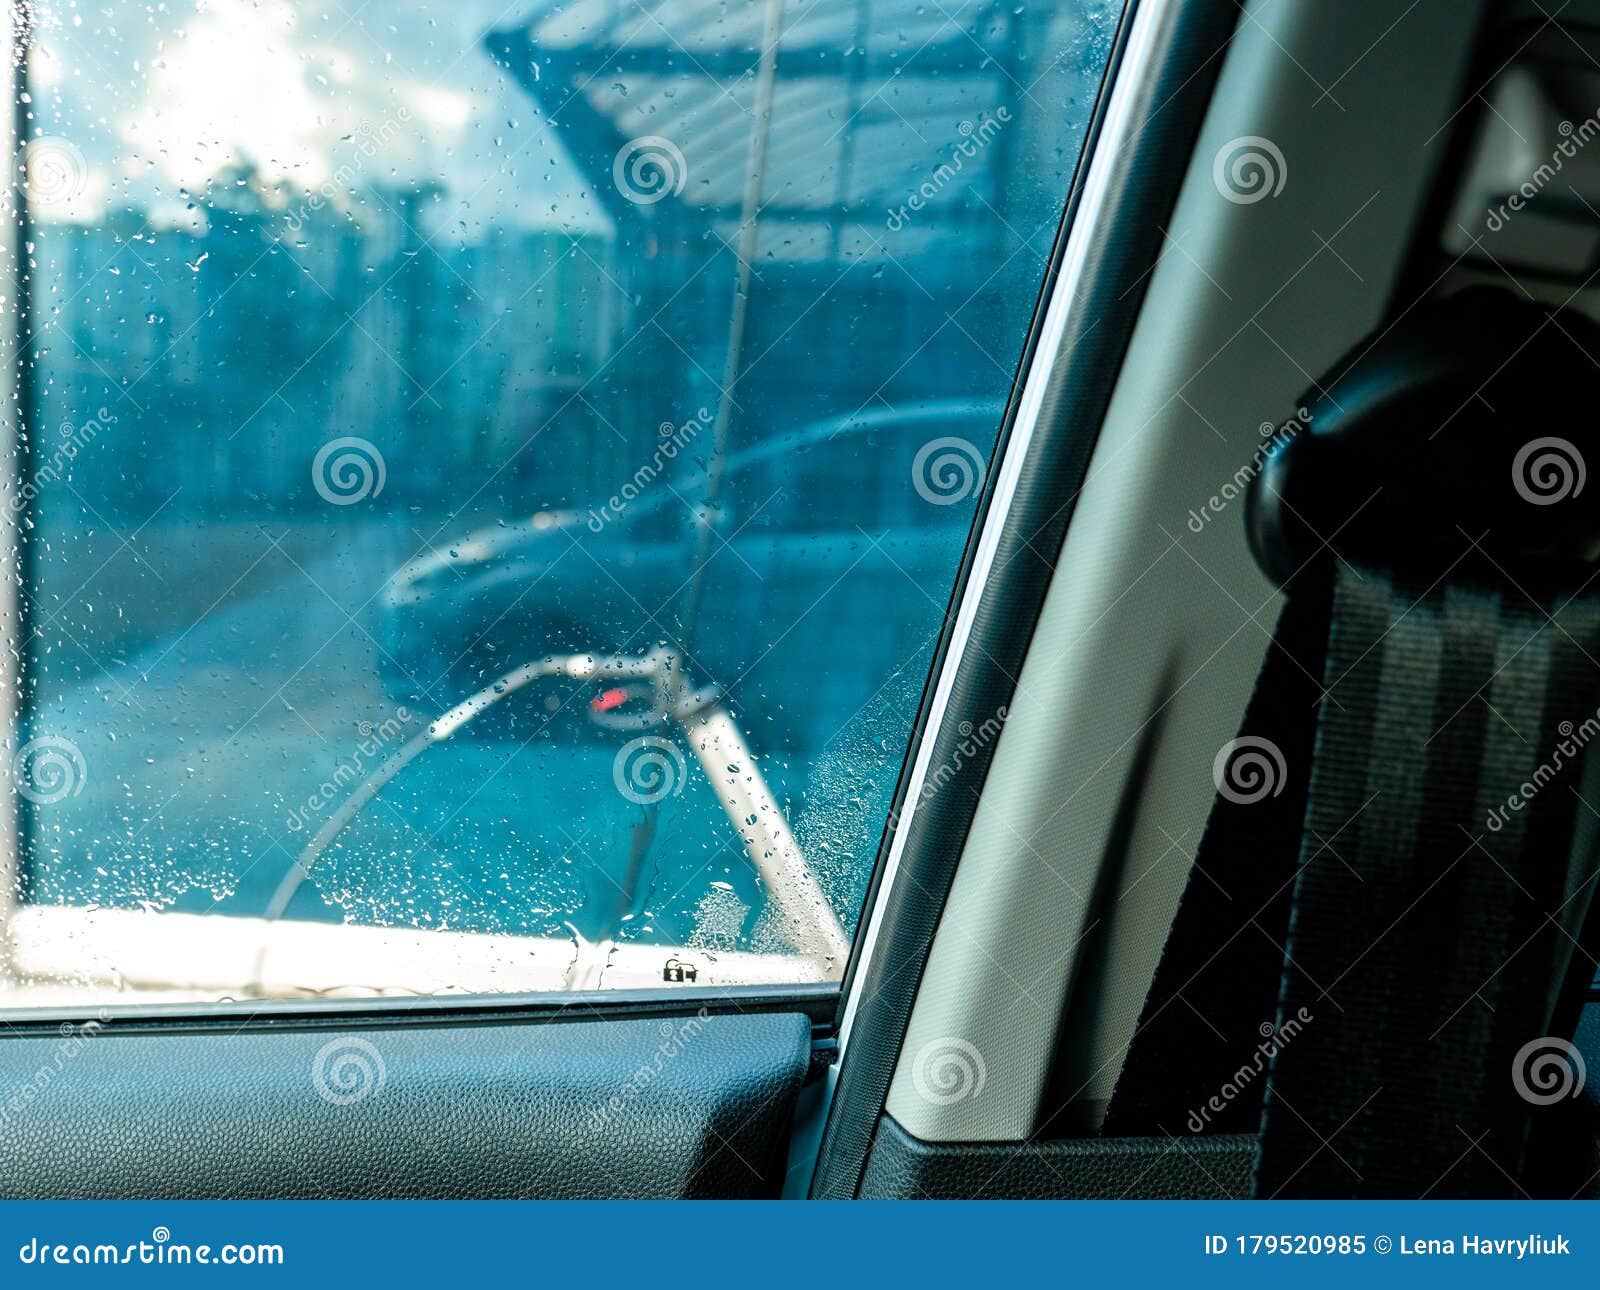 Чтоб стекала вода. Запотевает лобовое стекло Пежо 407. Запотевшие окна в машине. Запотевшее стекло в машине. Потеет лобовое стекло снаружи.